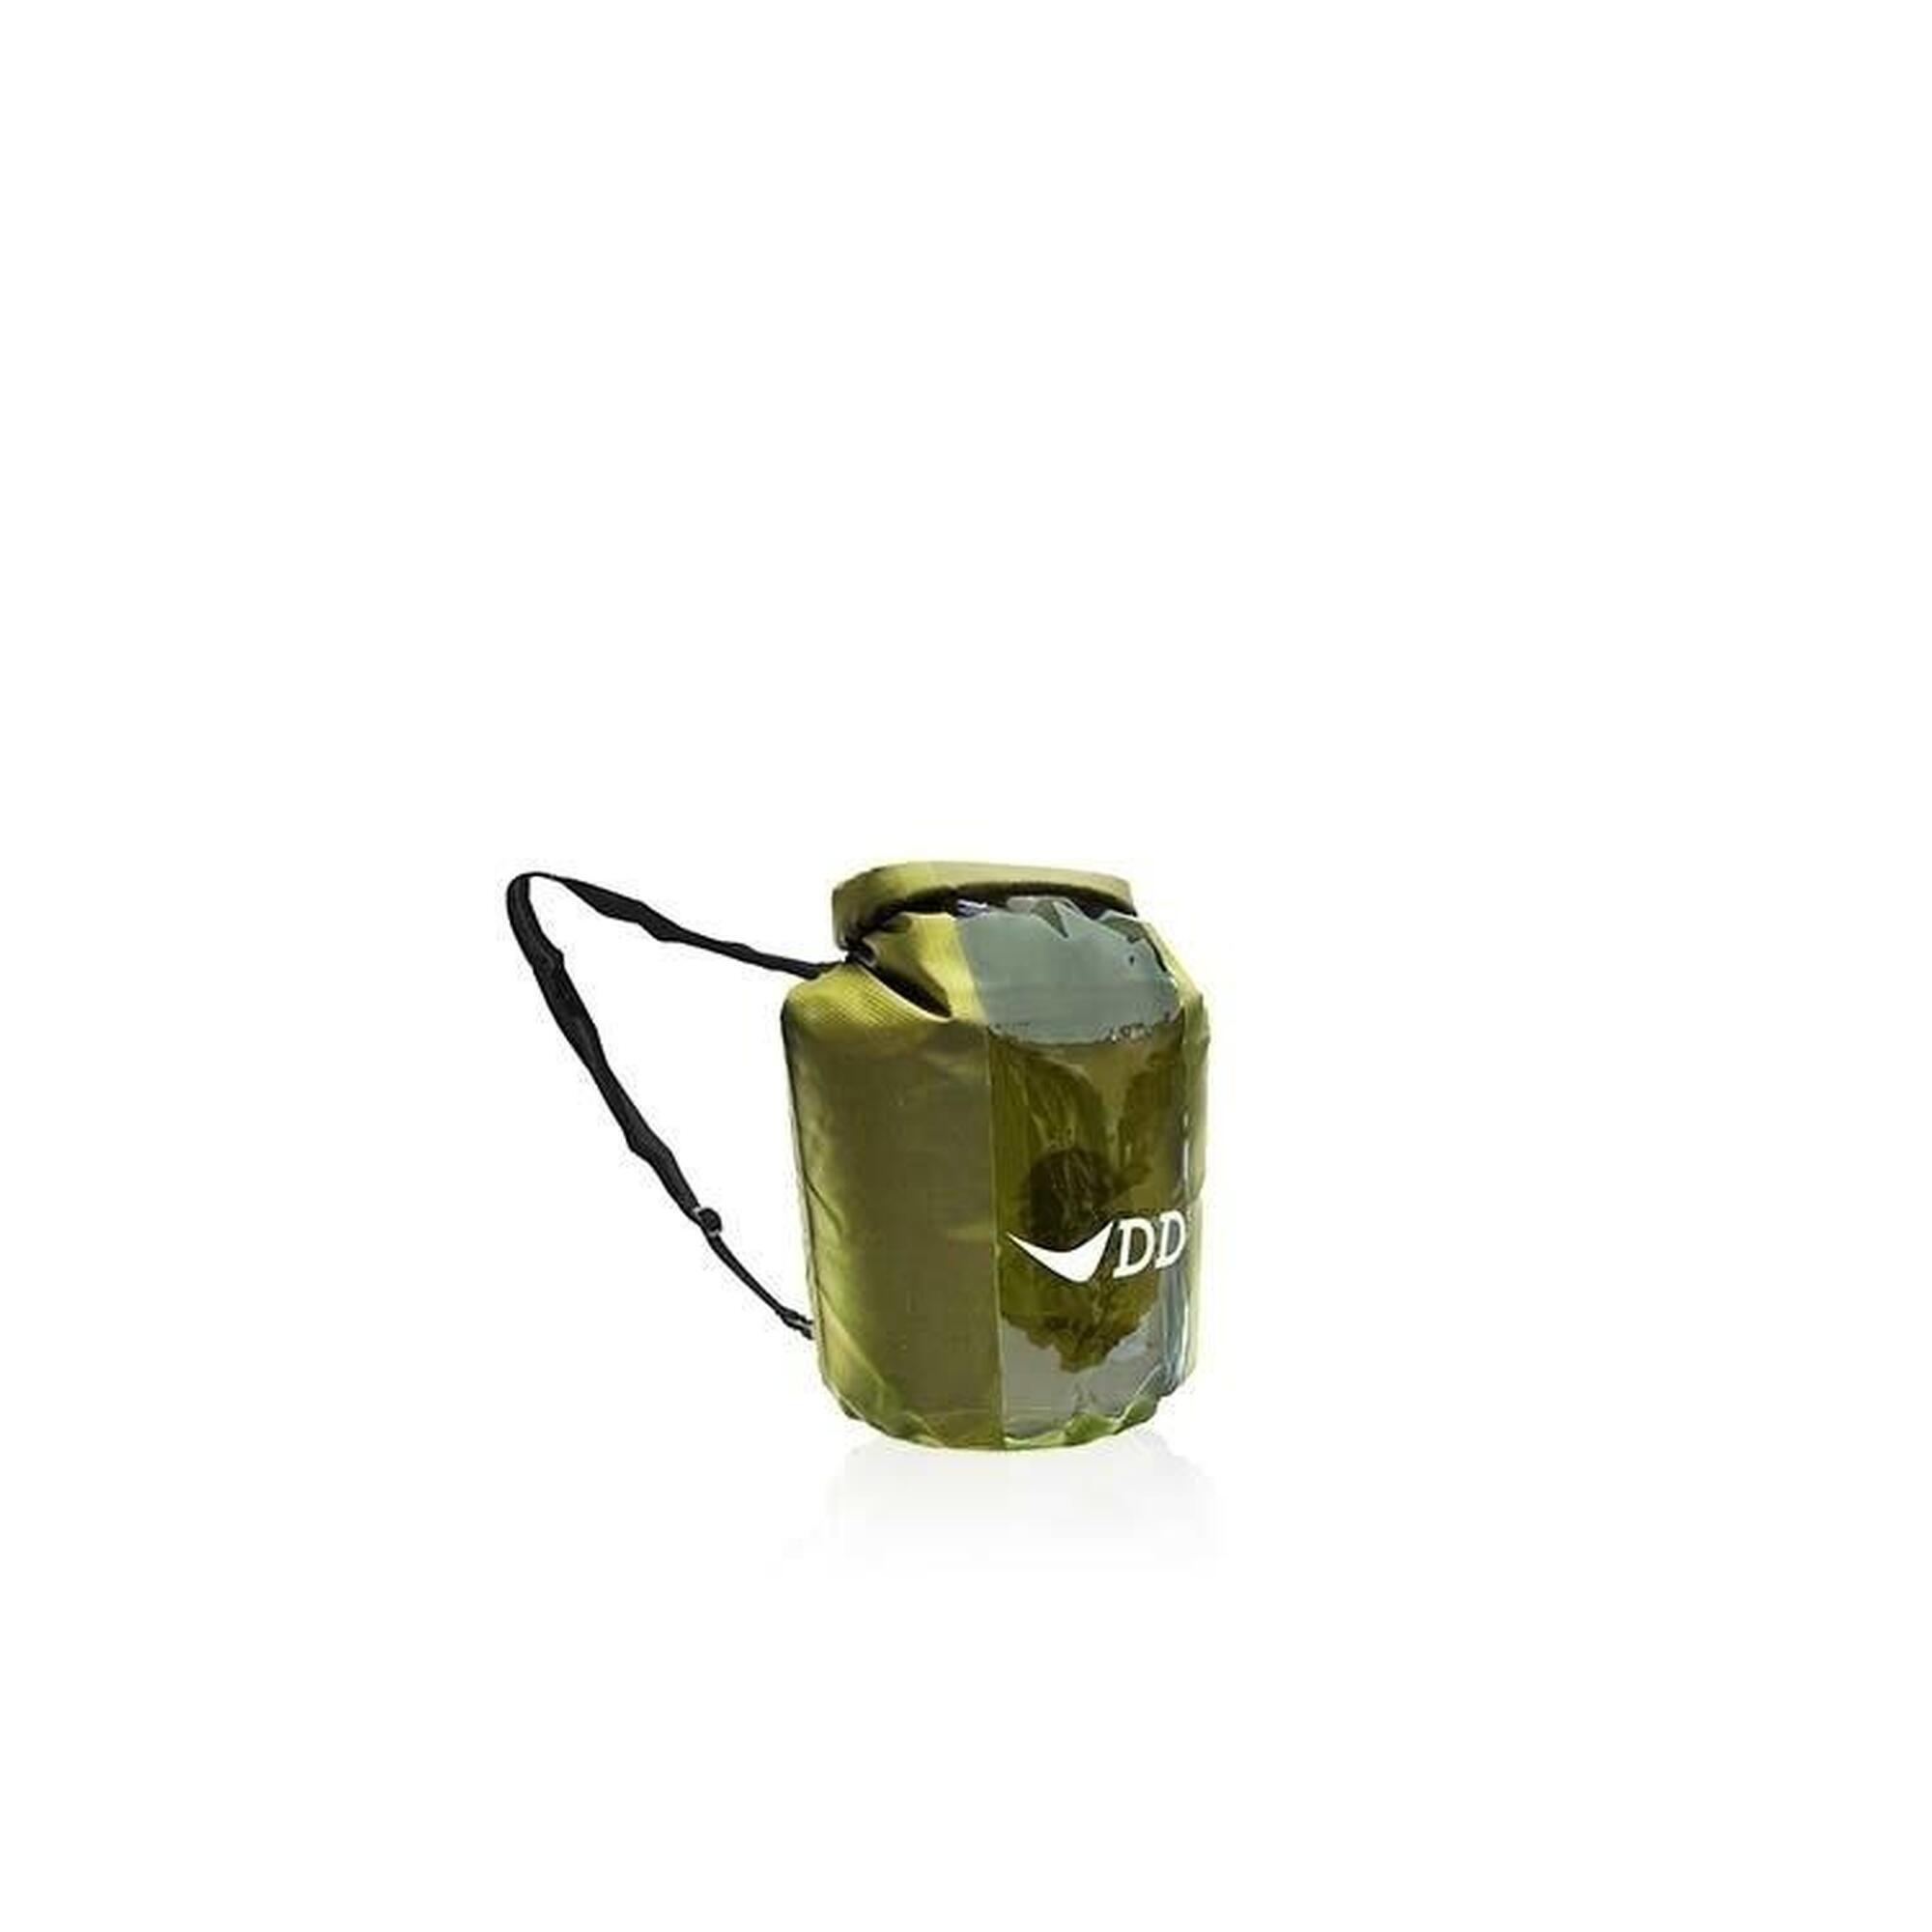 DD Hammocks Dry Bag 5 liter - Groen Waterdichte Hoes